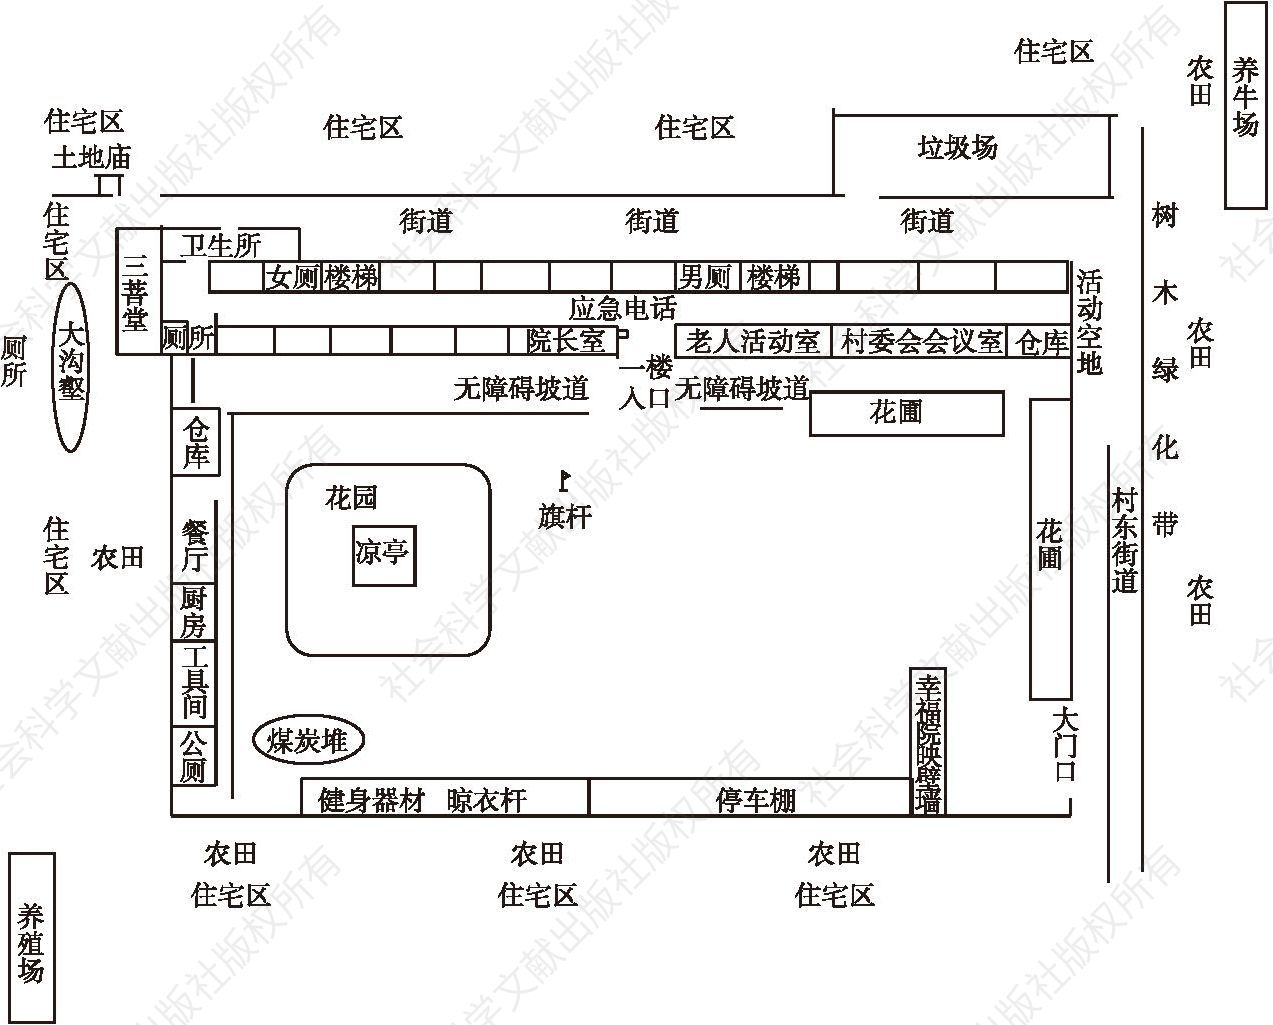 图4-1 幸福院布局及一楼平面